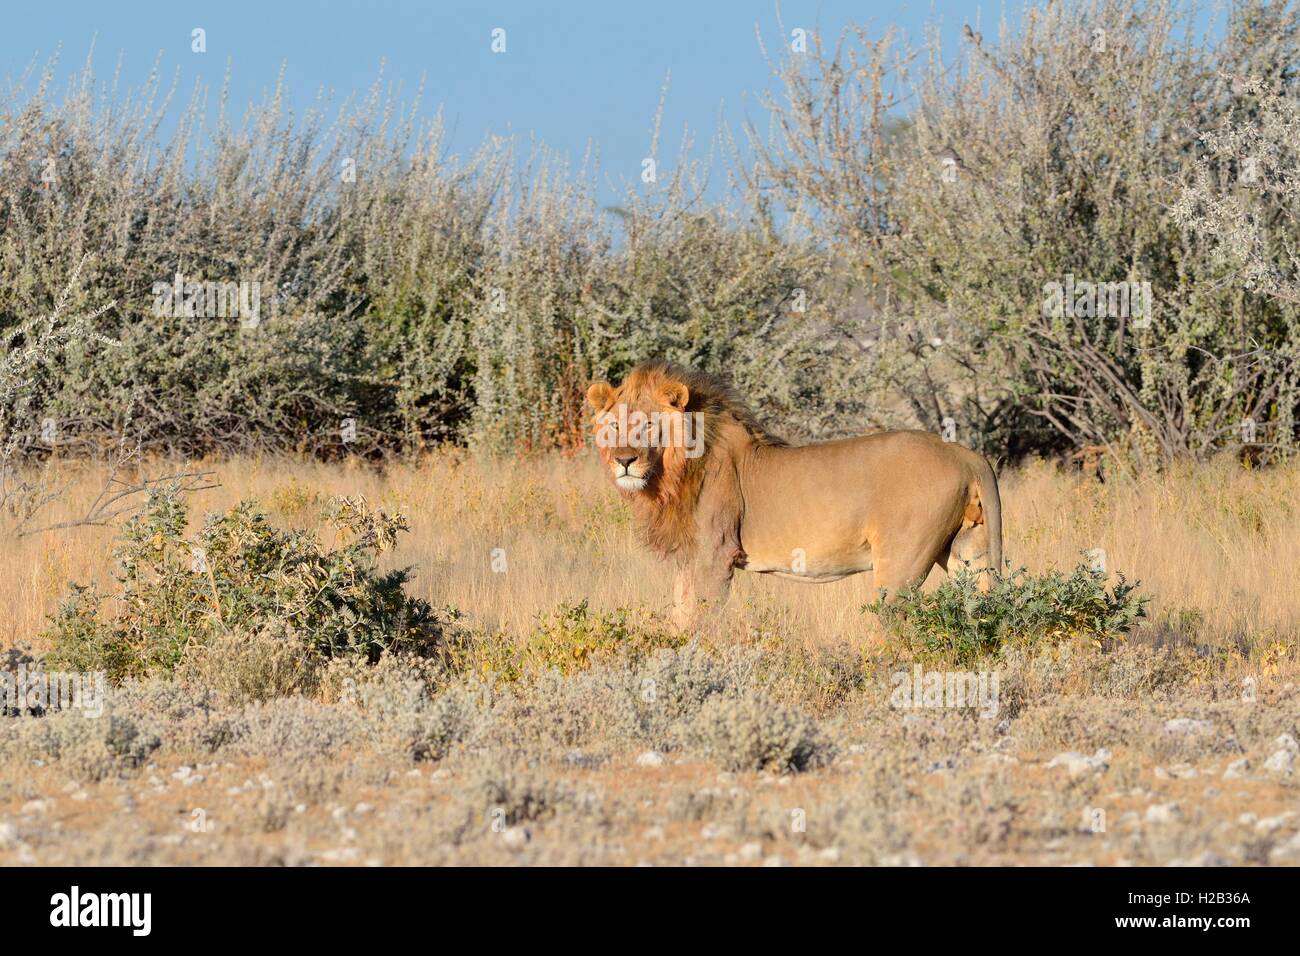 Lion (Panthera leo), standing, alert, Etosha National Park, Namibia, Africa Stock Photo